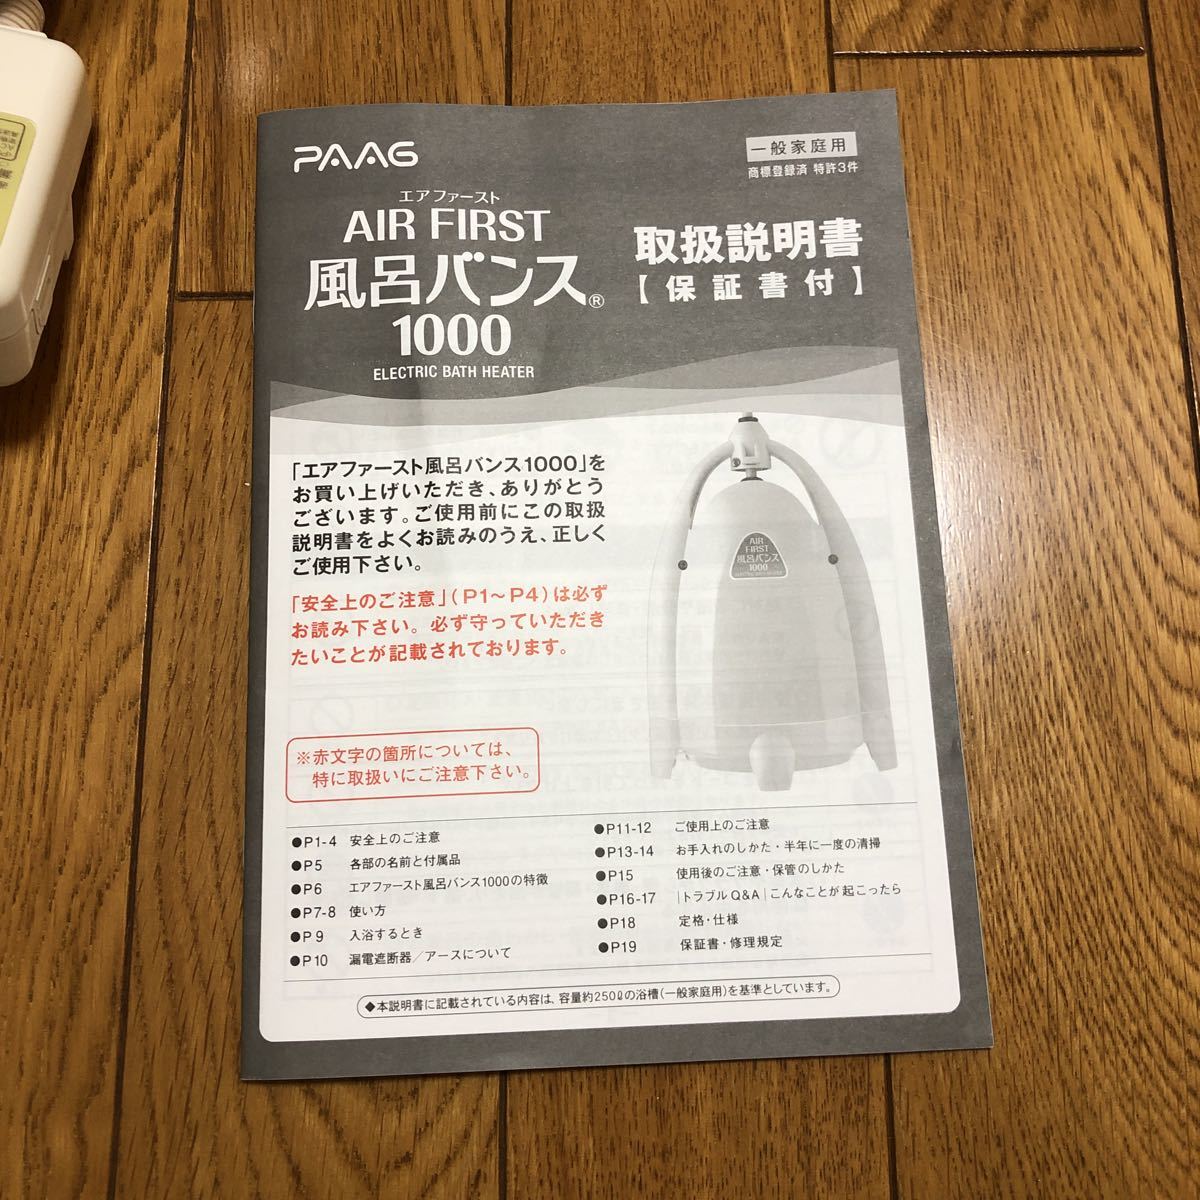 大特価 AIR FIRST 風呂バンス 1000 取扱説明書のみ sushitai.com.mx